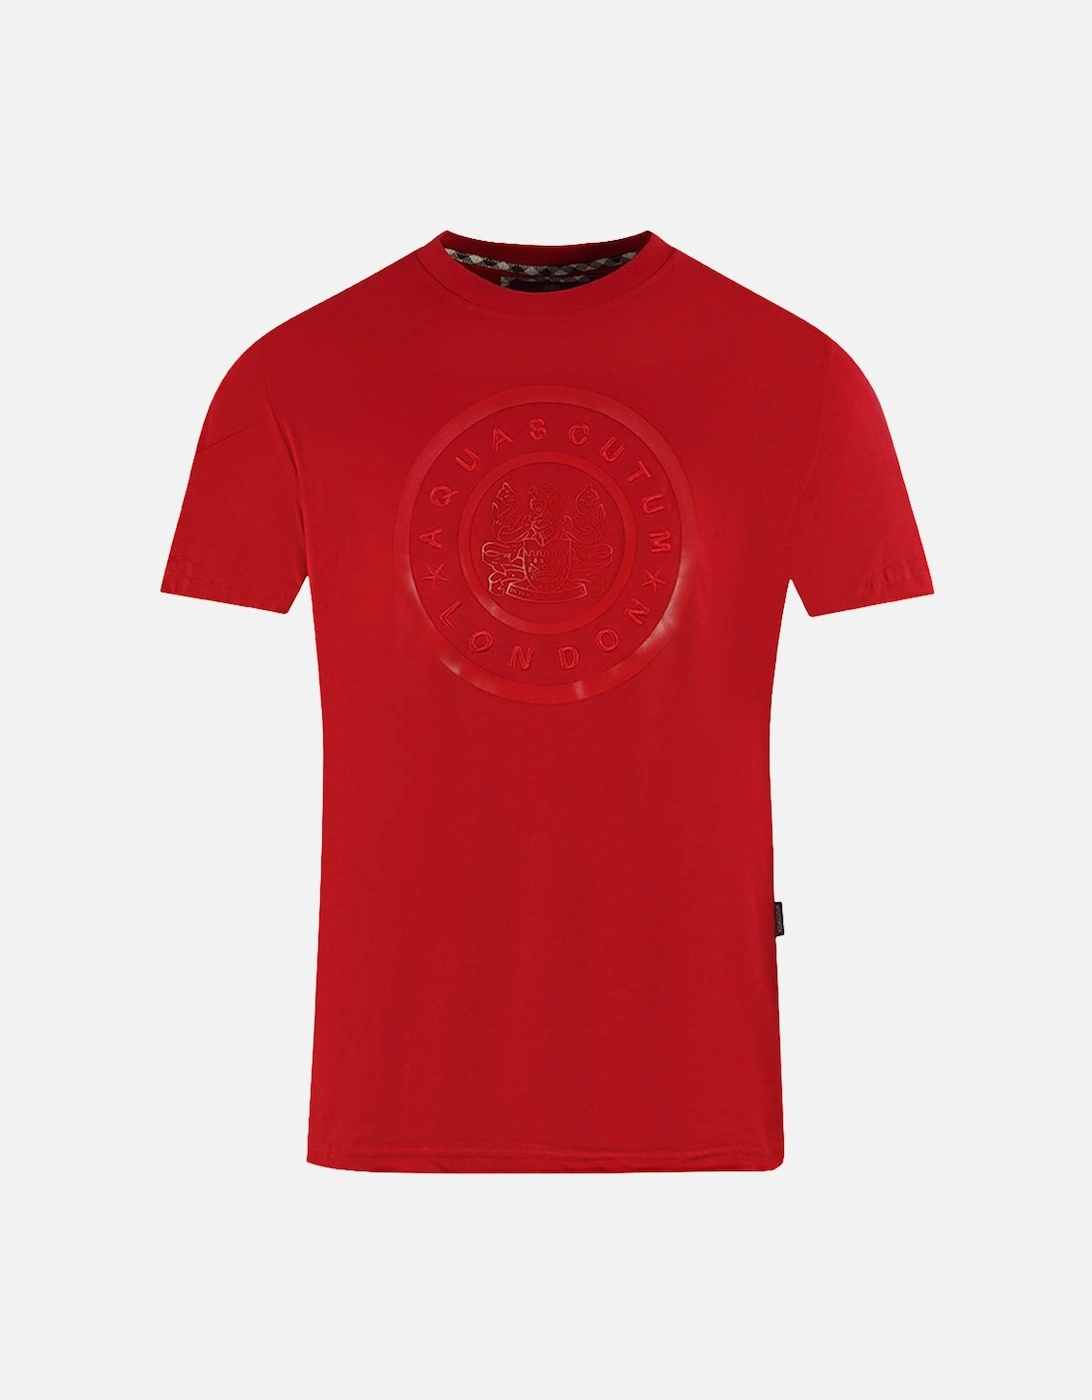 London Circle Logo Red T-Shirt, 3 of 2